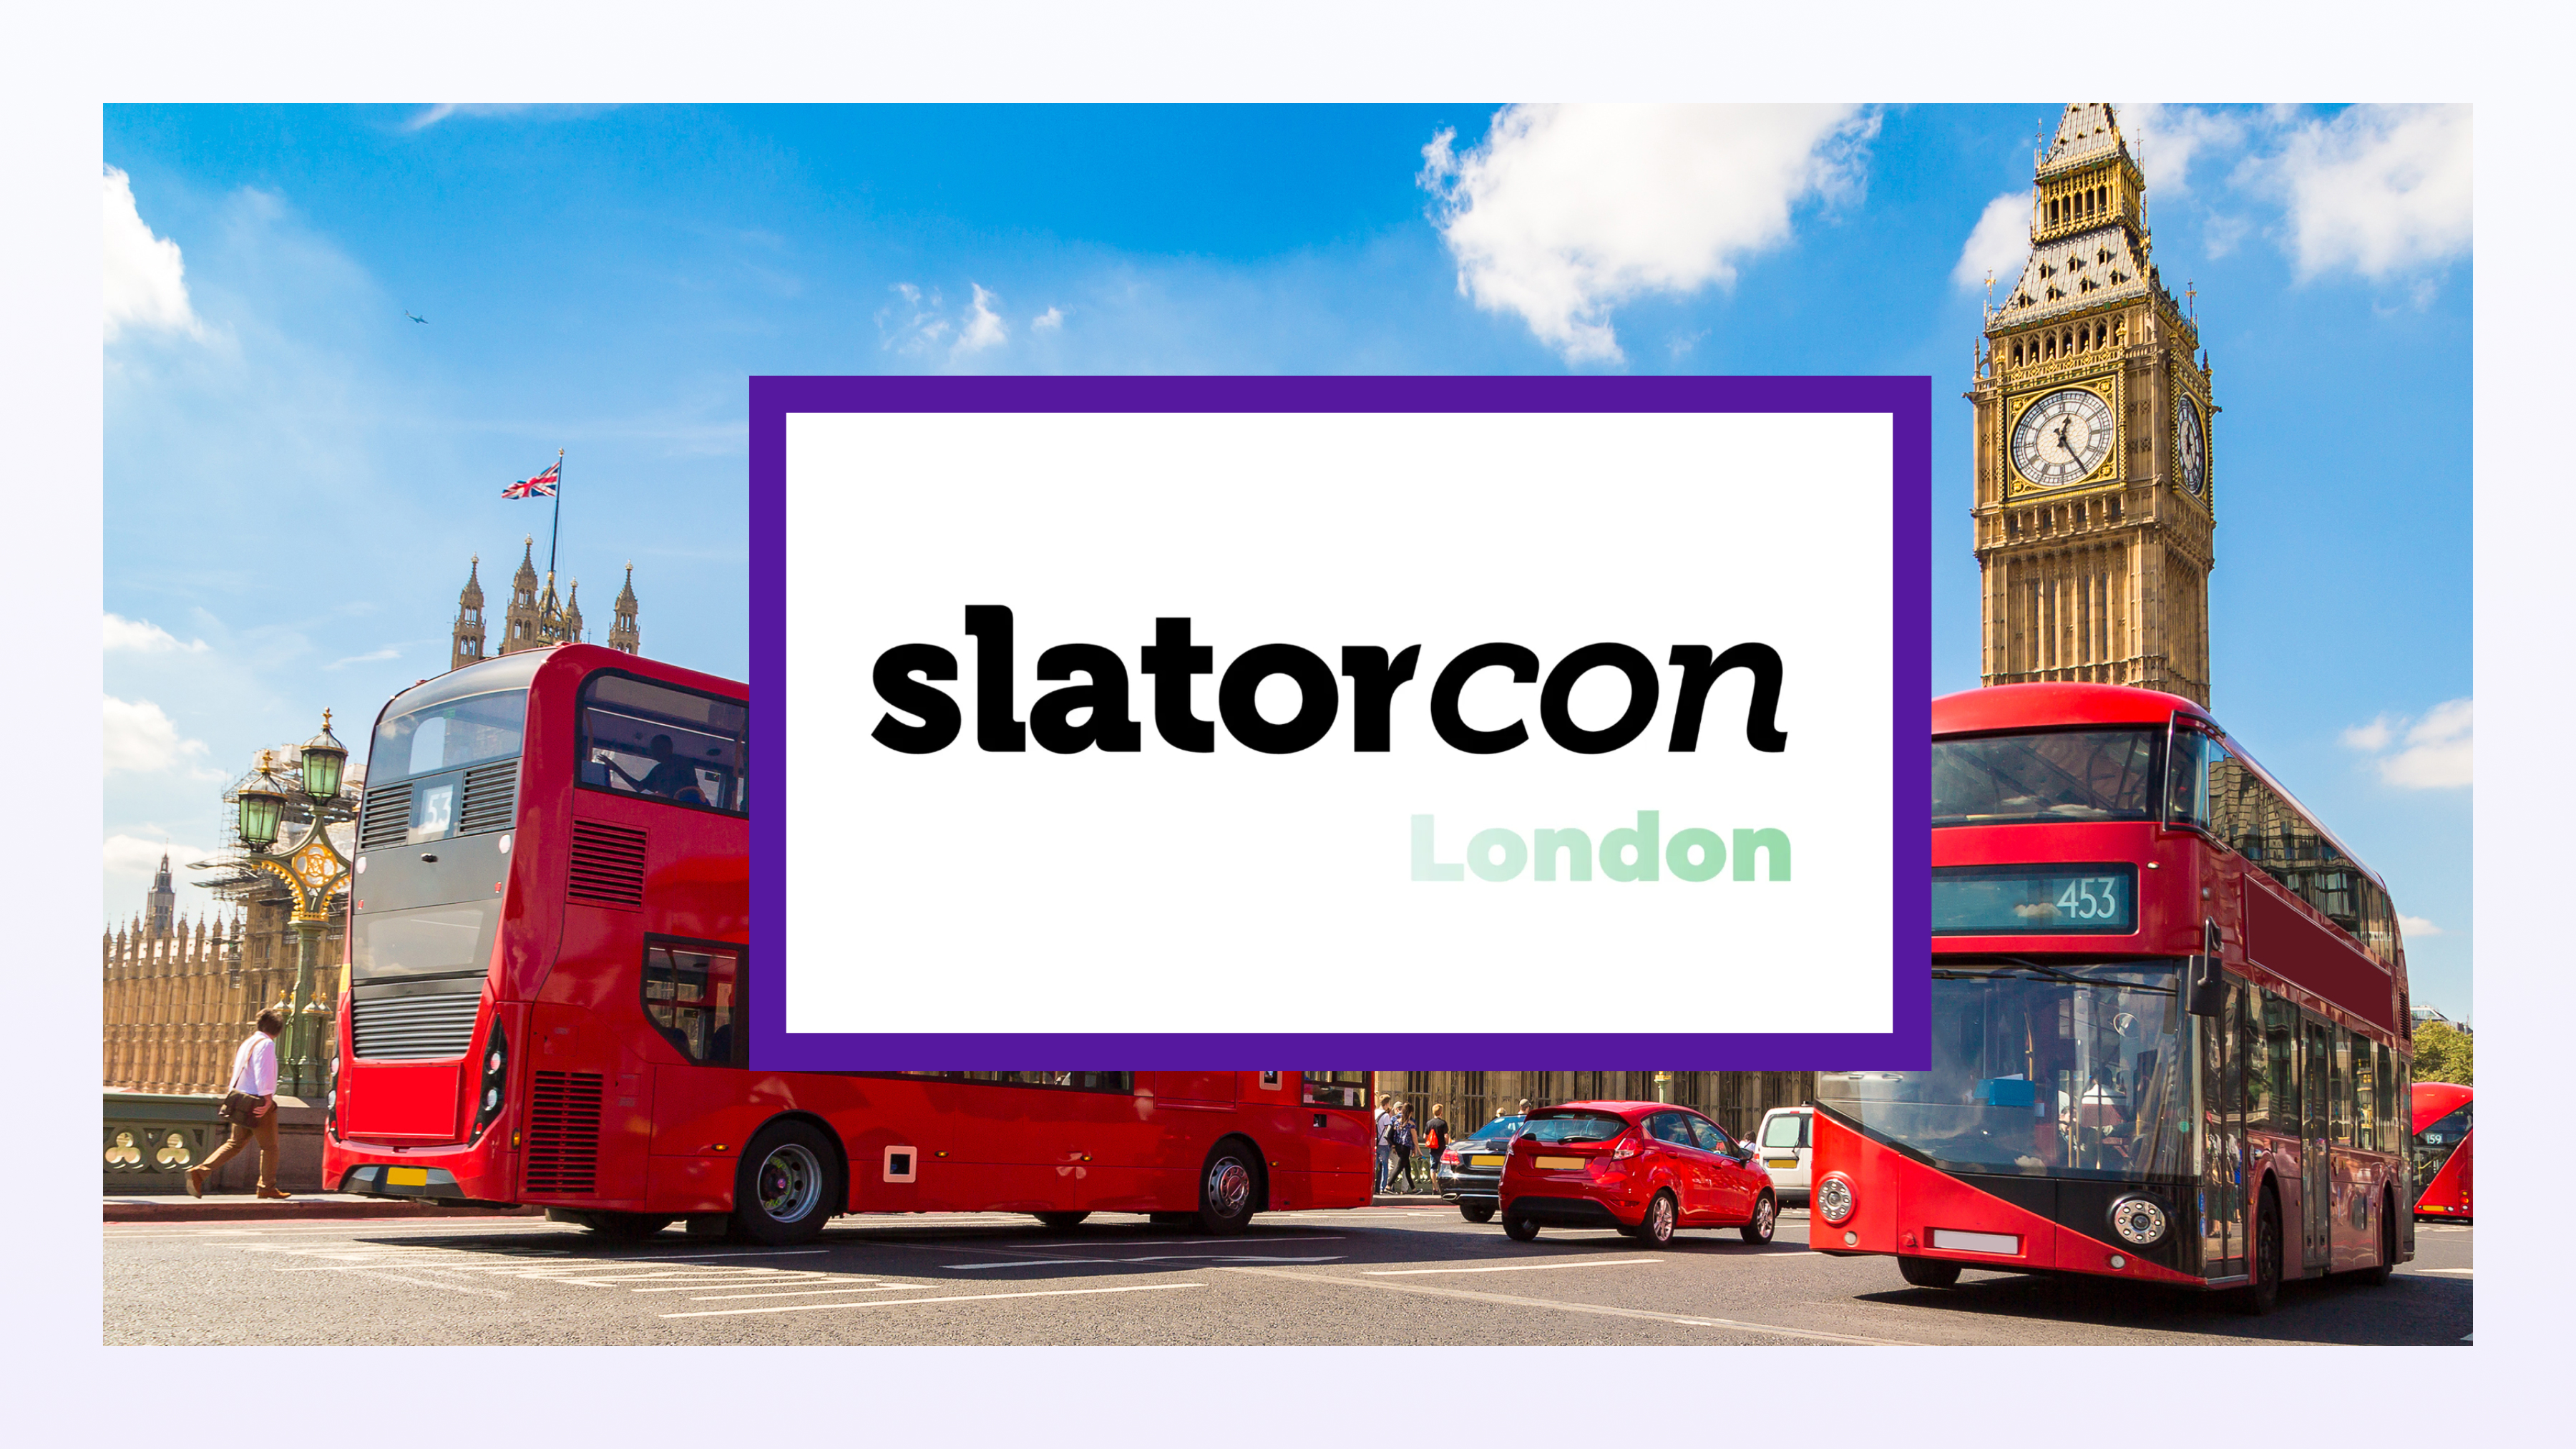 Slatorcon London